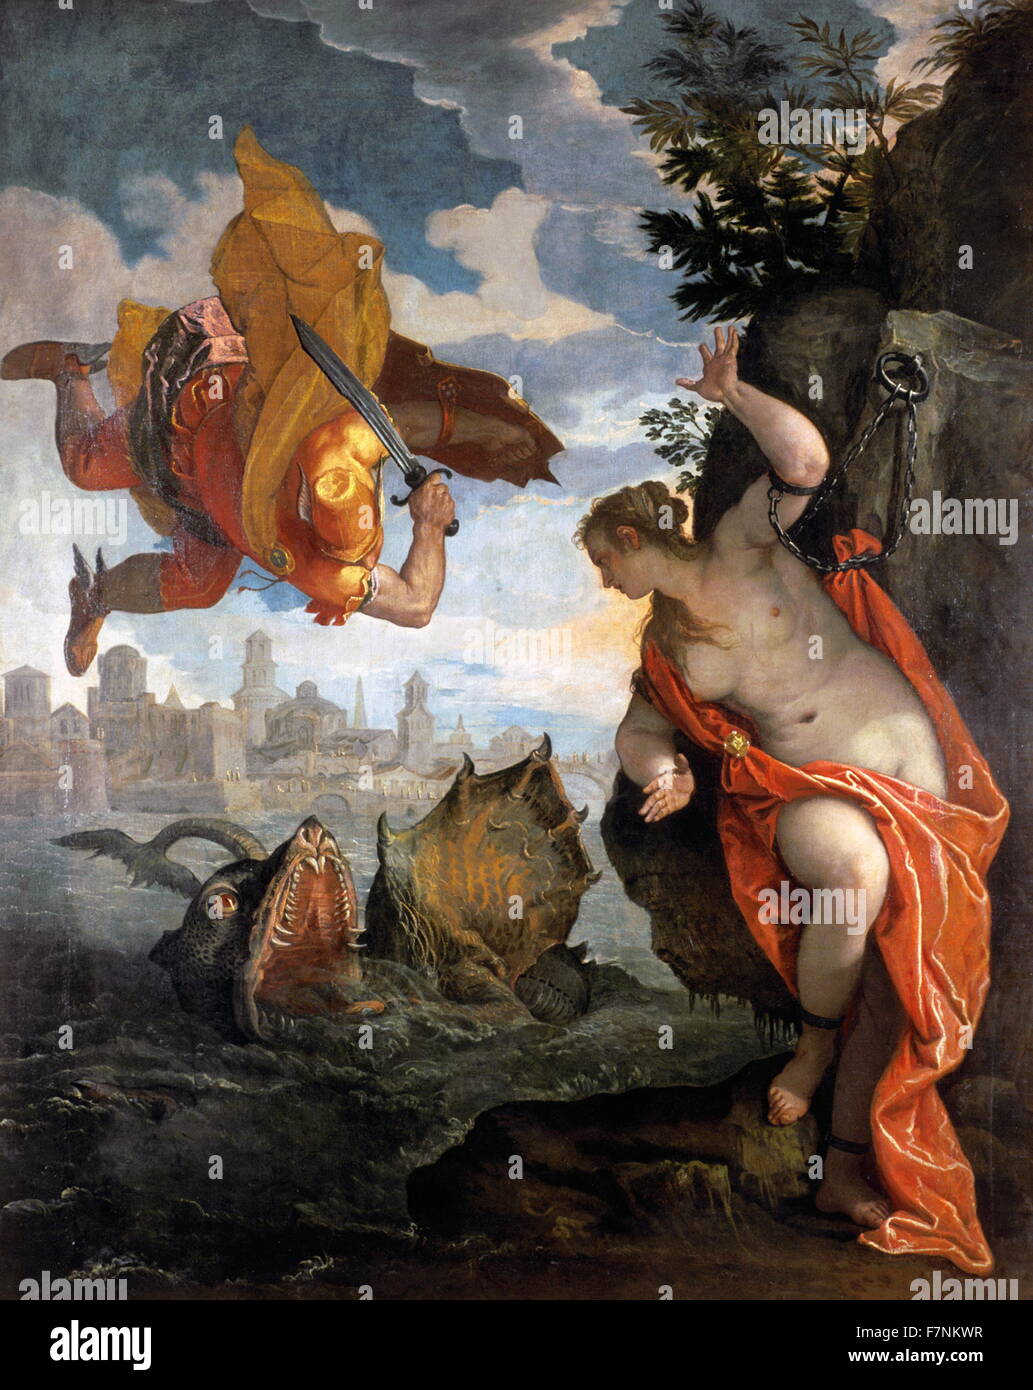 Persée et Andromède, huile sur toile de Paolo Véronèse, 1584 Banque D'Images